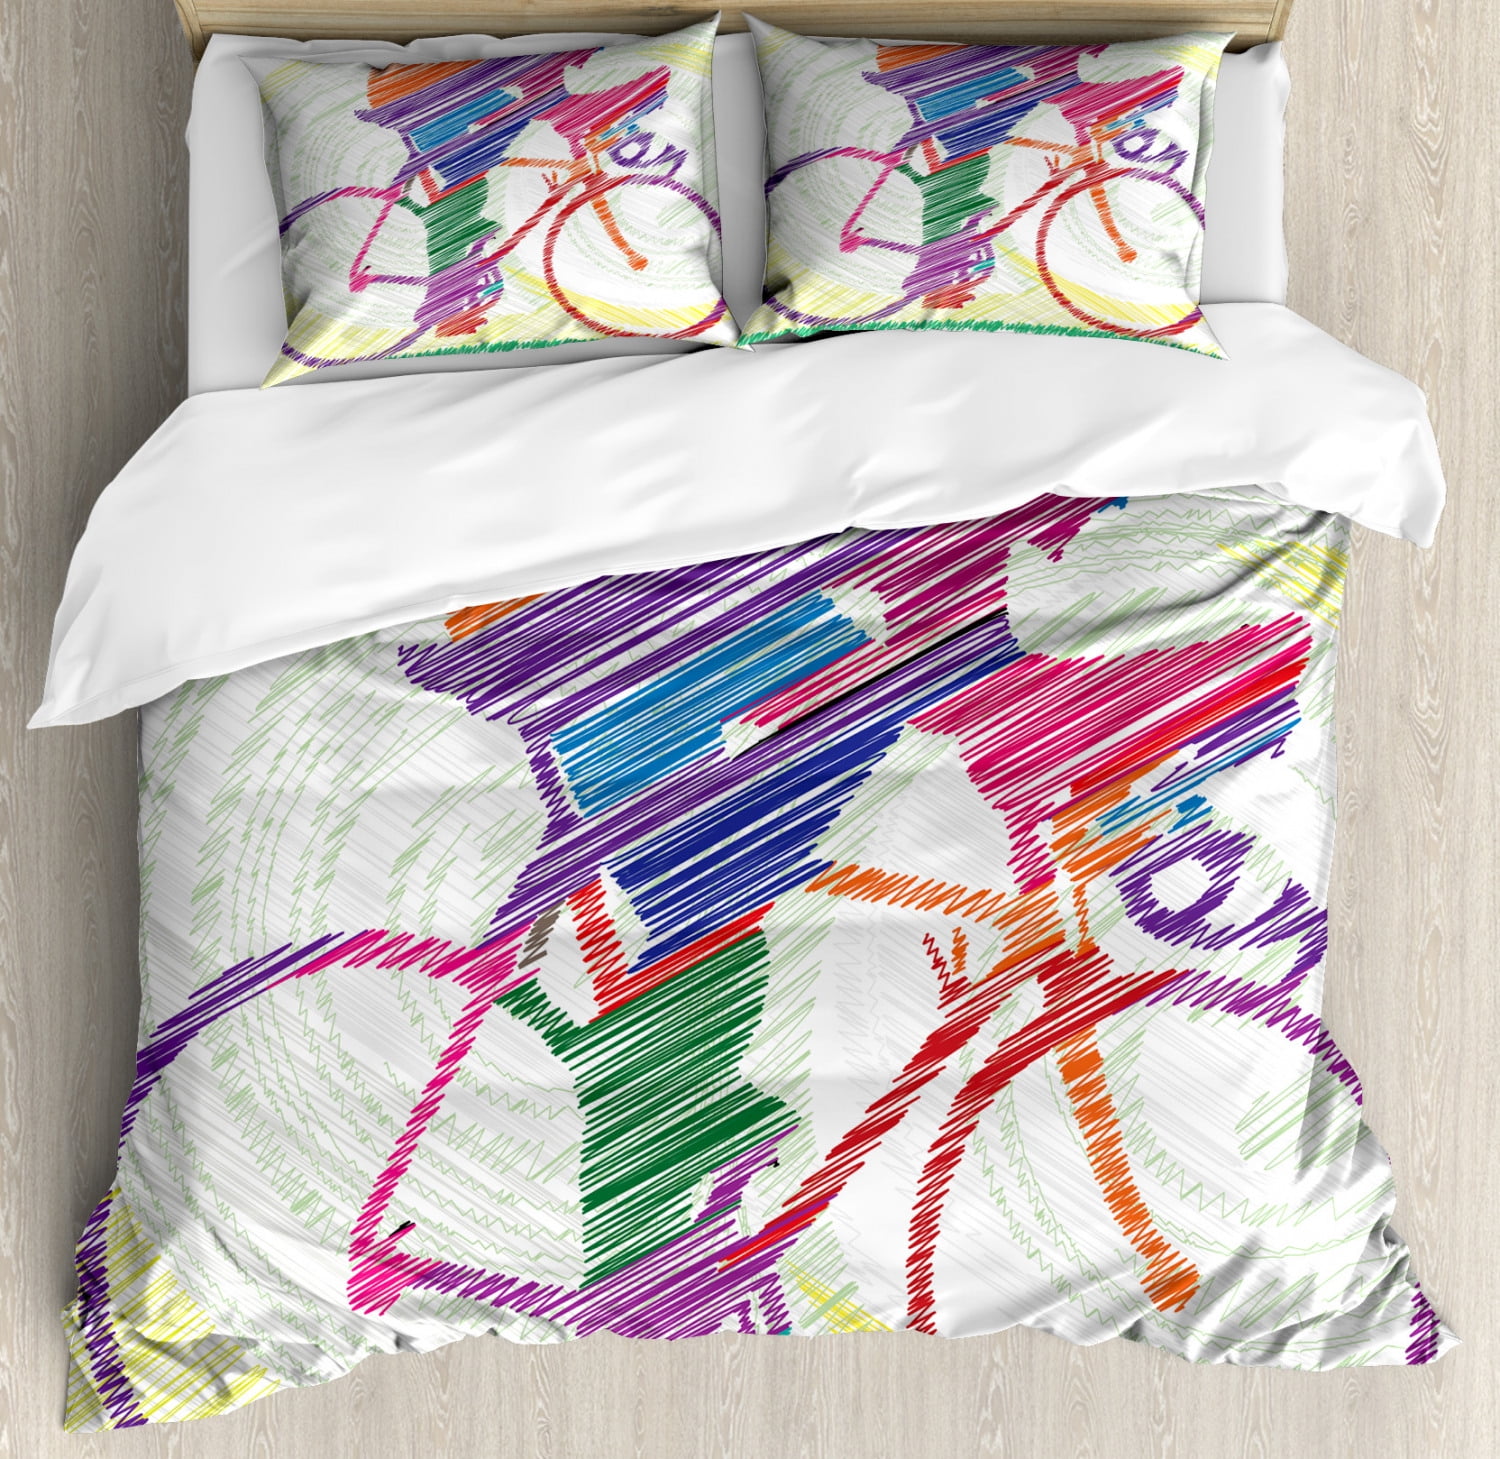 Dreamscene Meerkat Animal Print Duvet Cover With Pillow Case Bedding Set Stripe